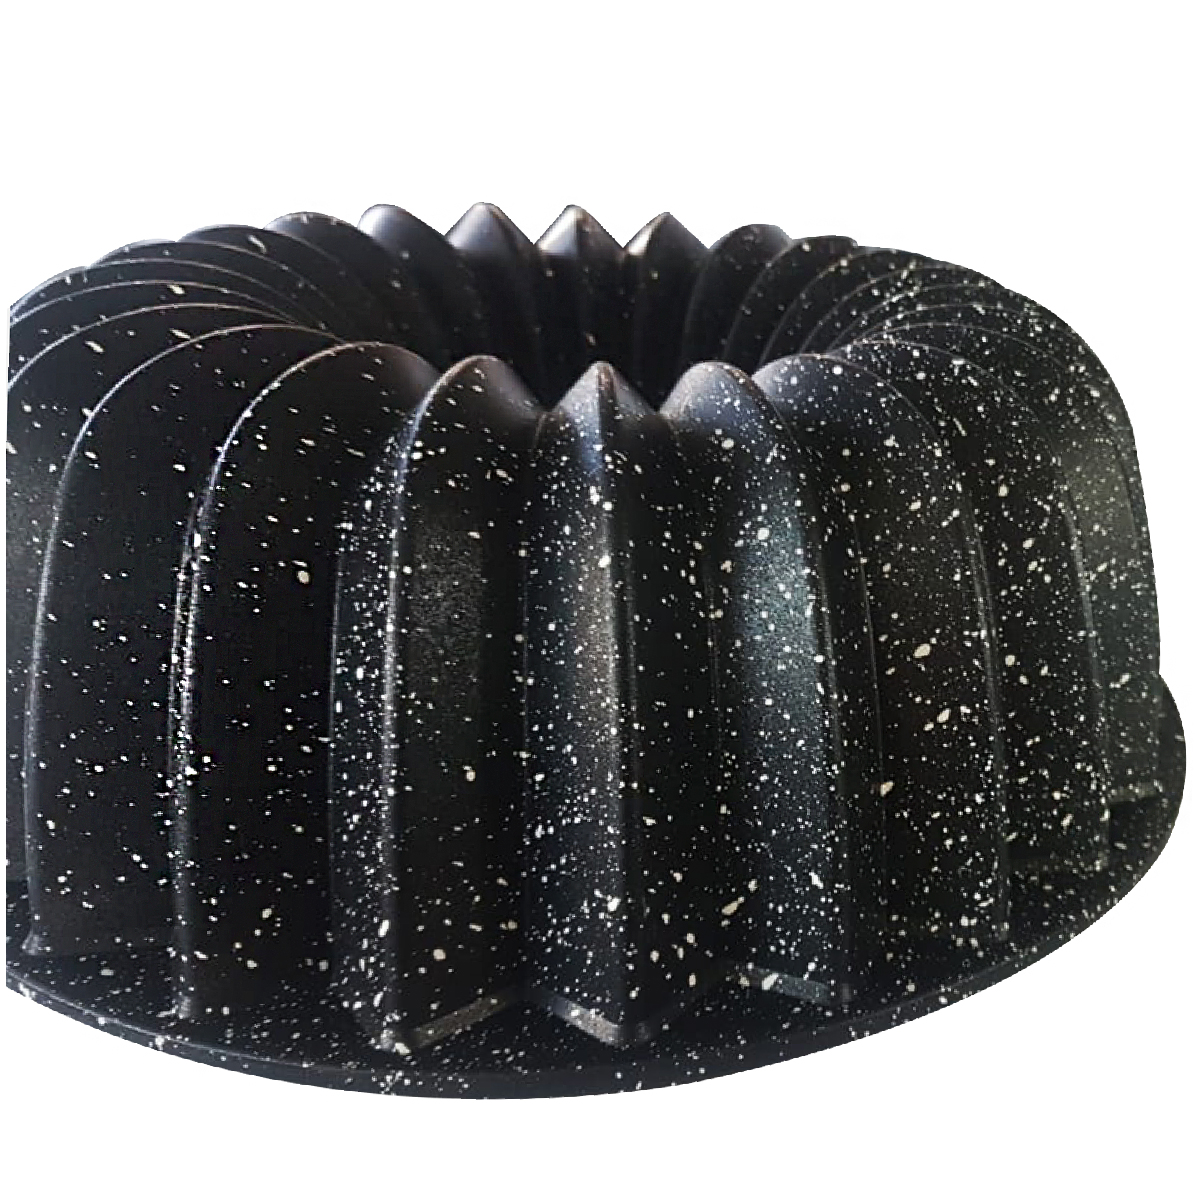 Dosthoff Cast Aluminum Granite Coated Bundform cake pan, 25 cm, Black, GDFXPR5